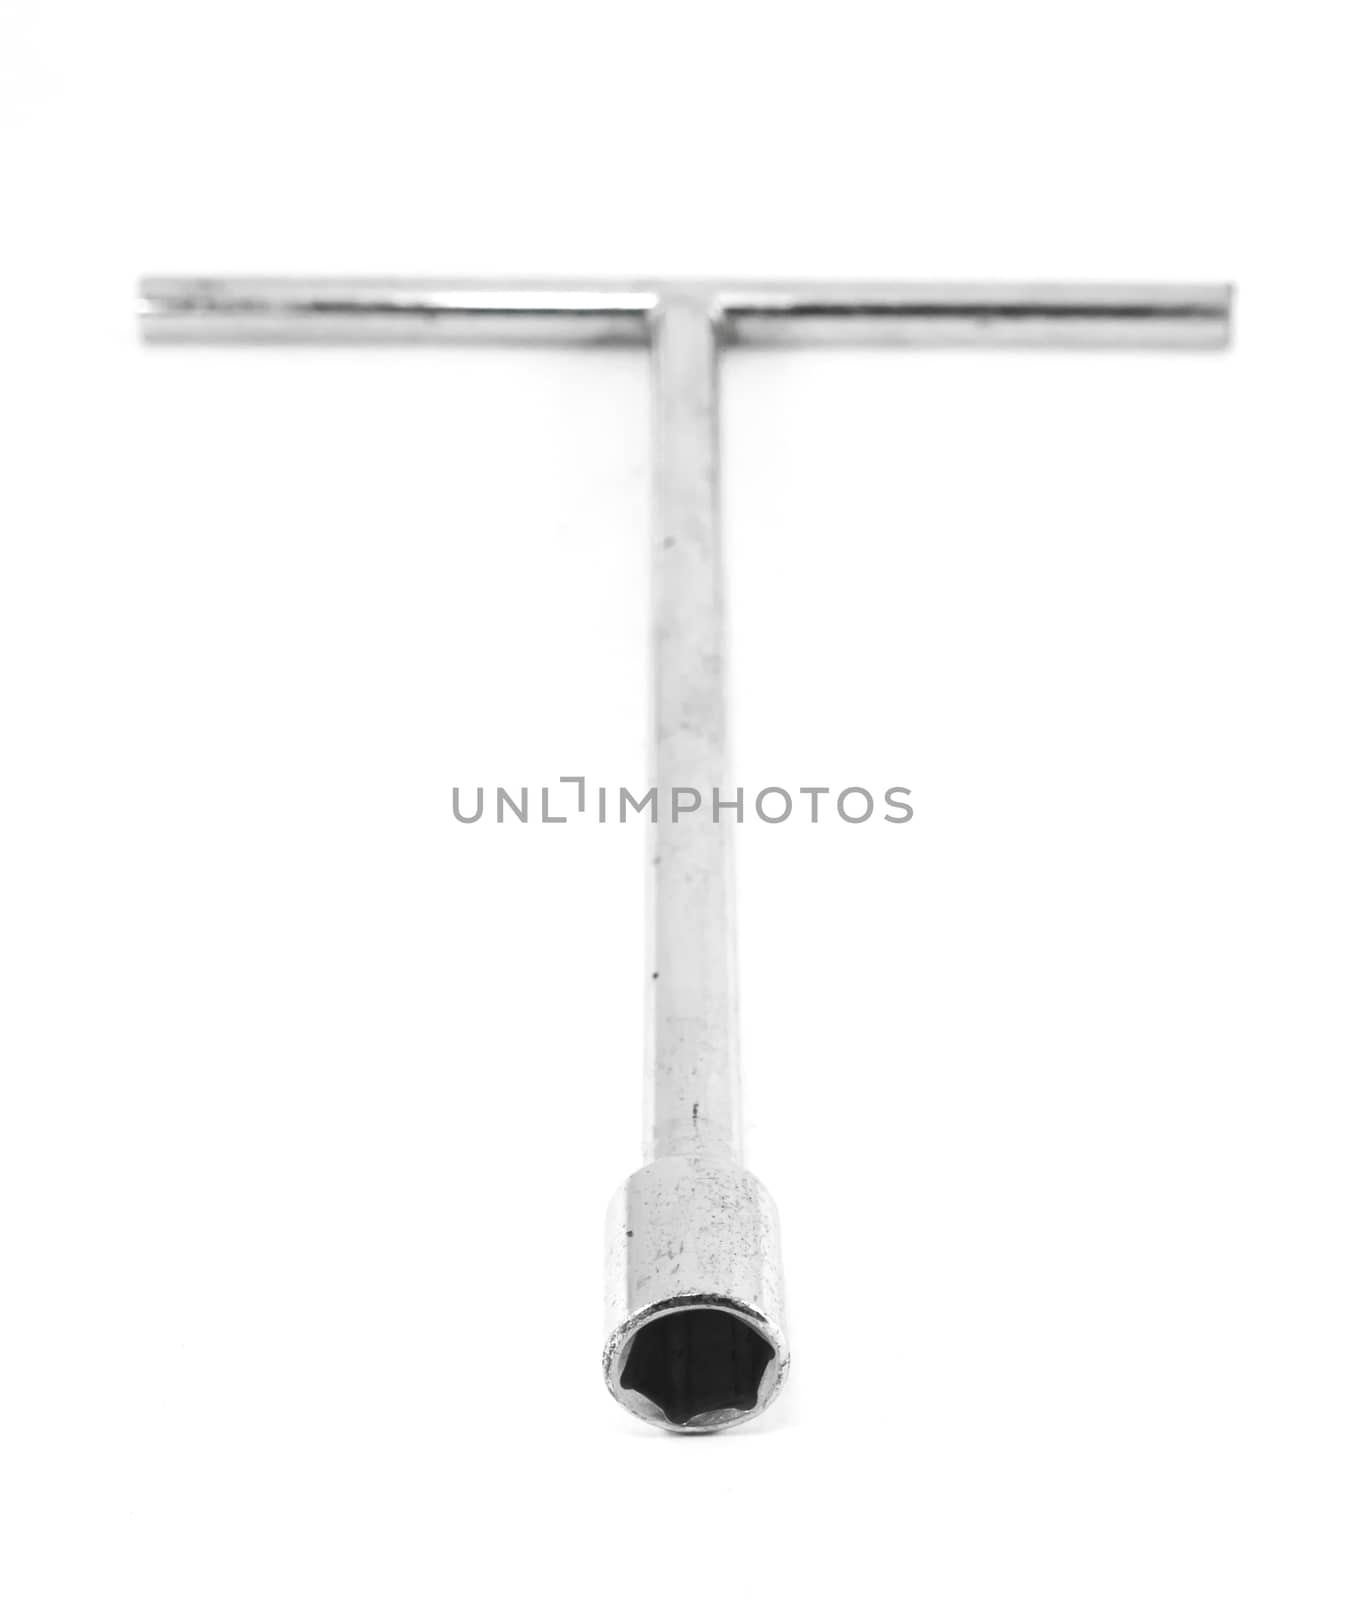 T shape socket wrench isolated on white background